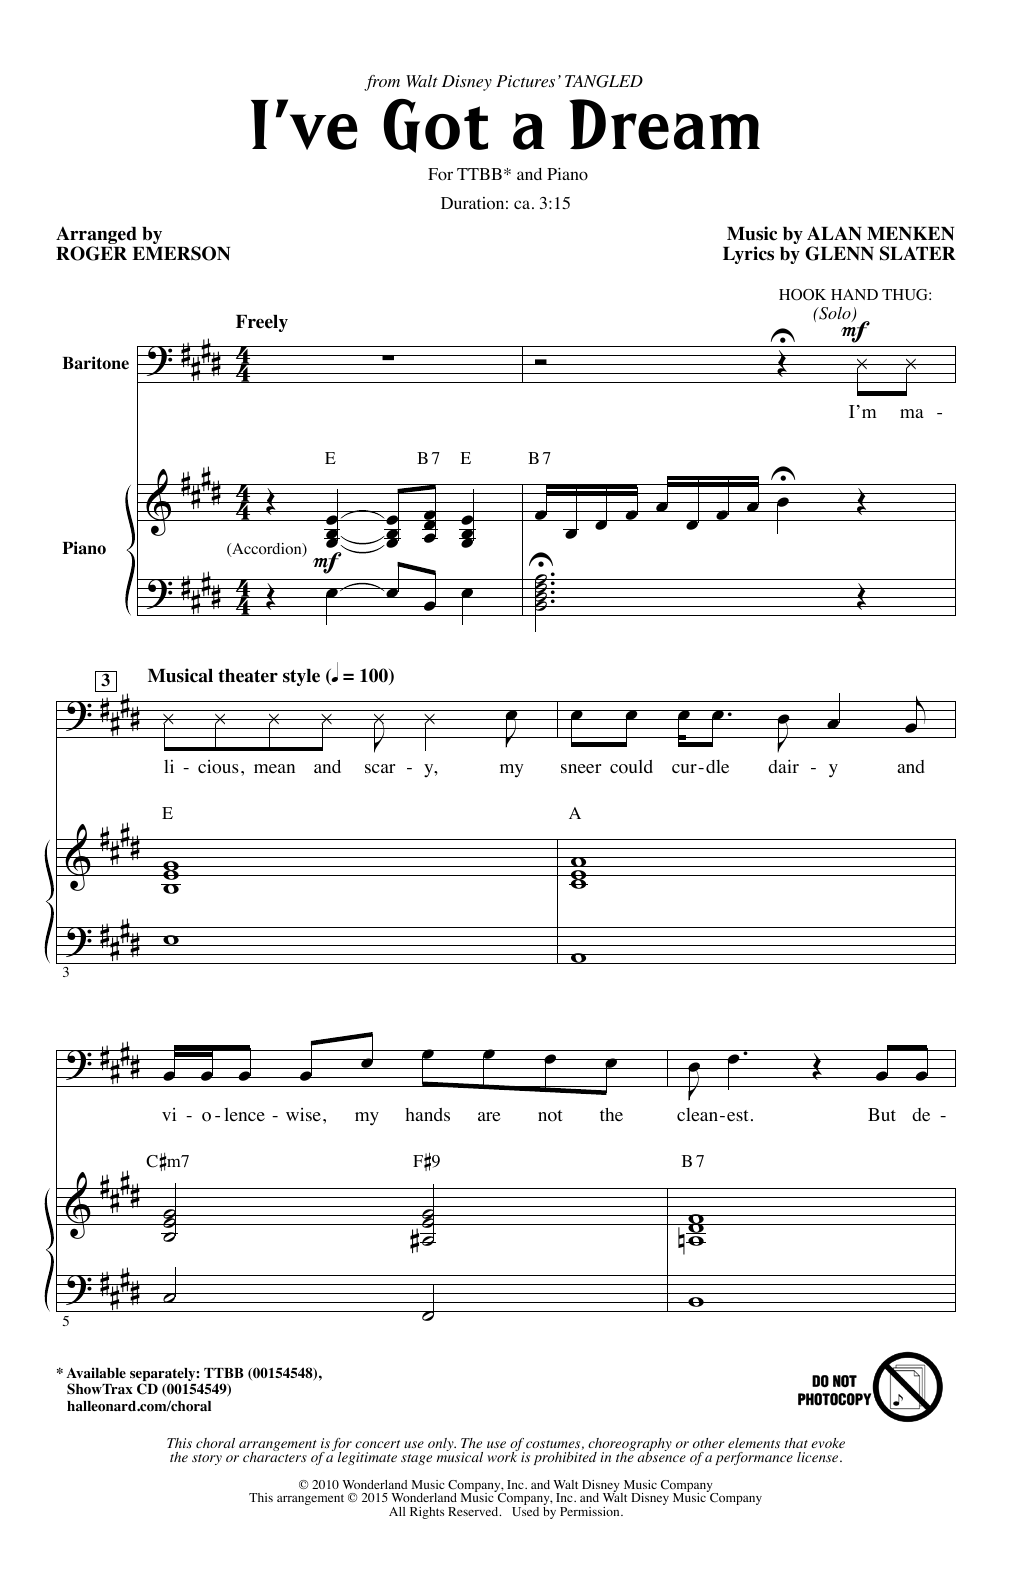 Alan Menken I've Got A Dream (from Disney's Tangled) (arr. Roger Emerson) Sheet Music Notes & Chords for TTBB - Download or Print PDF